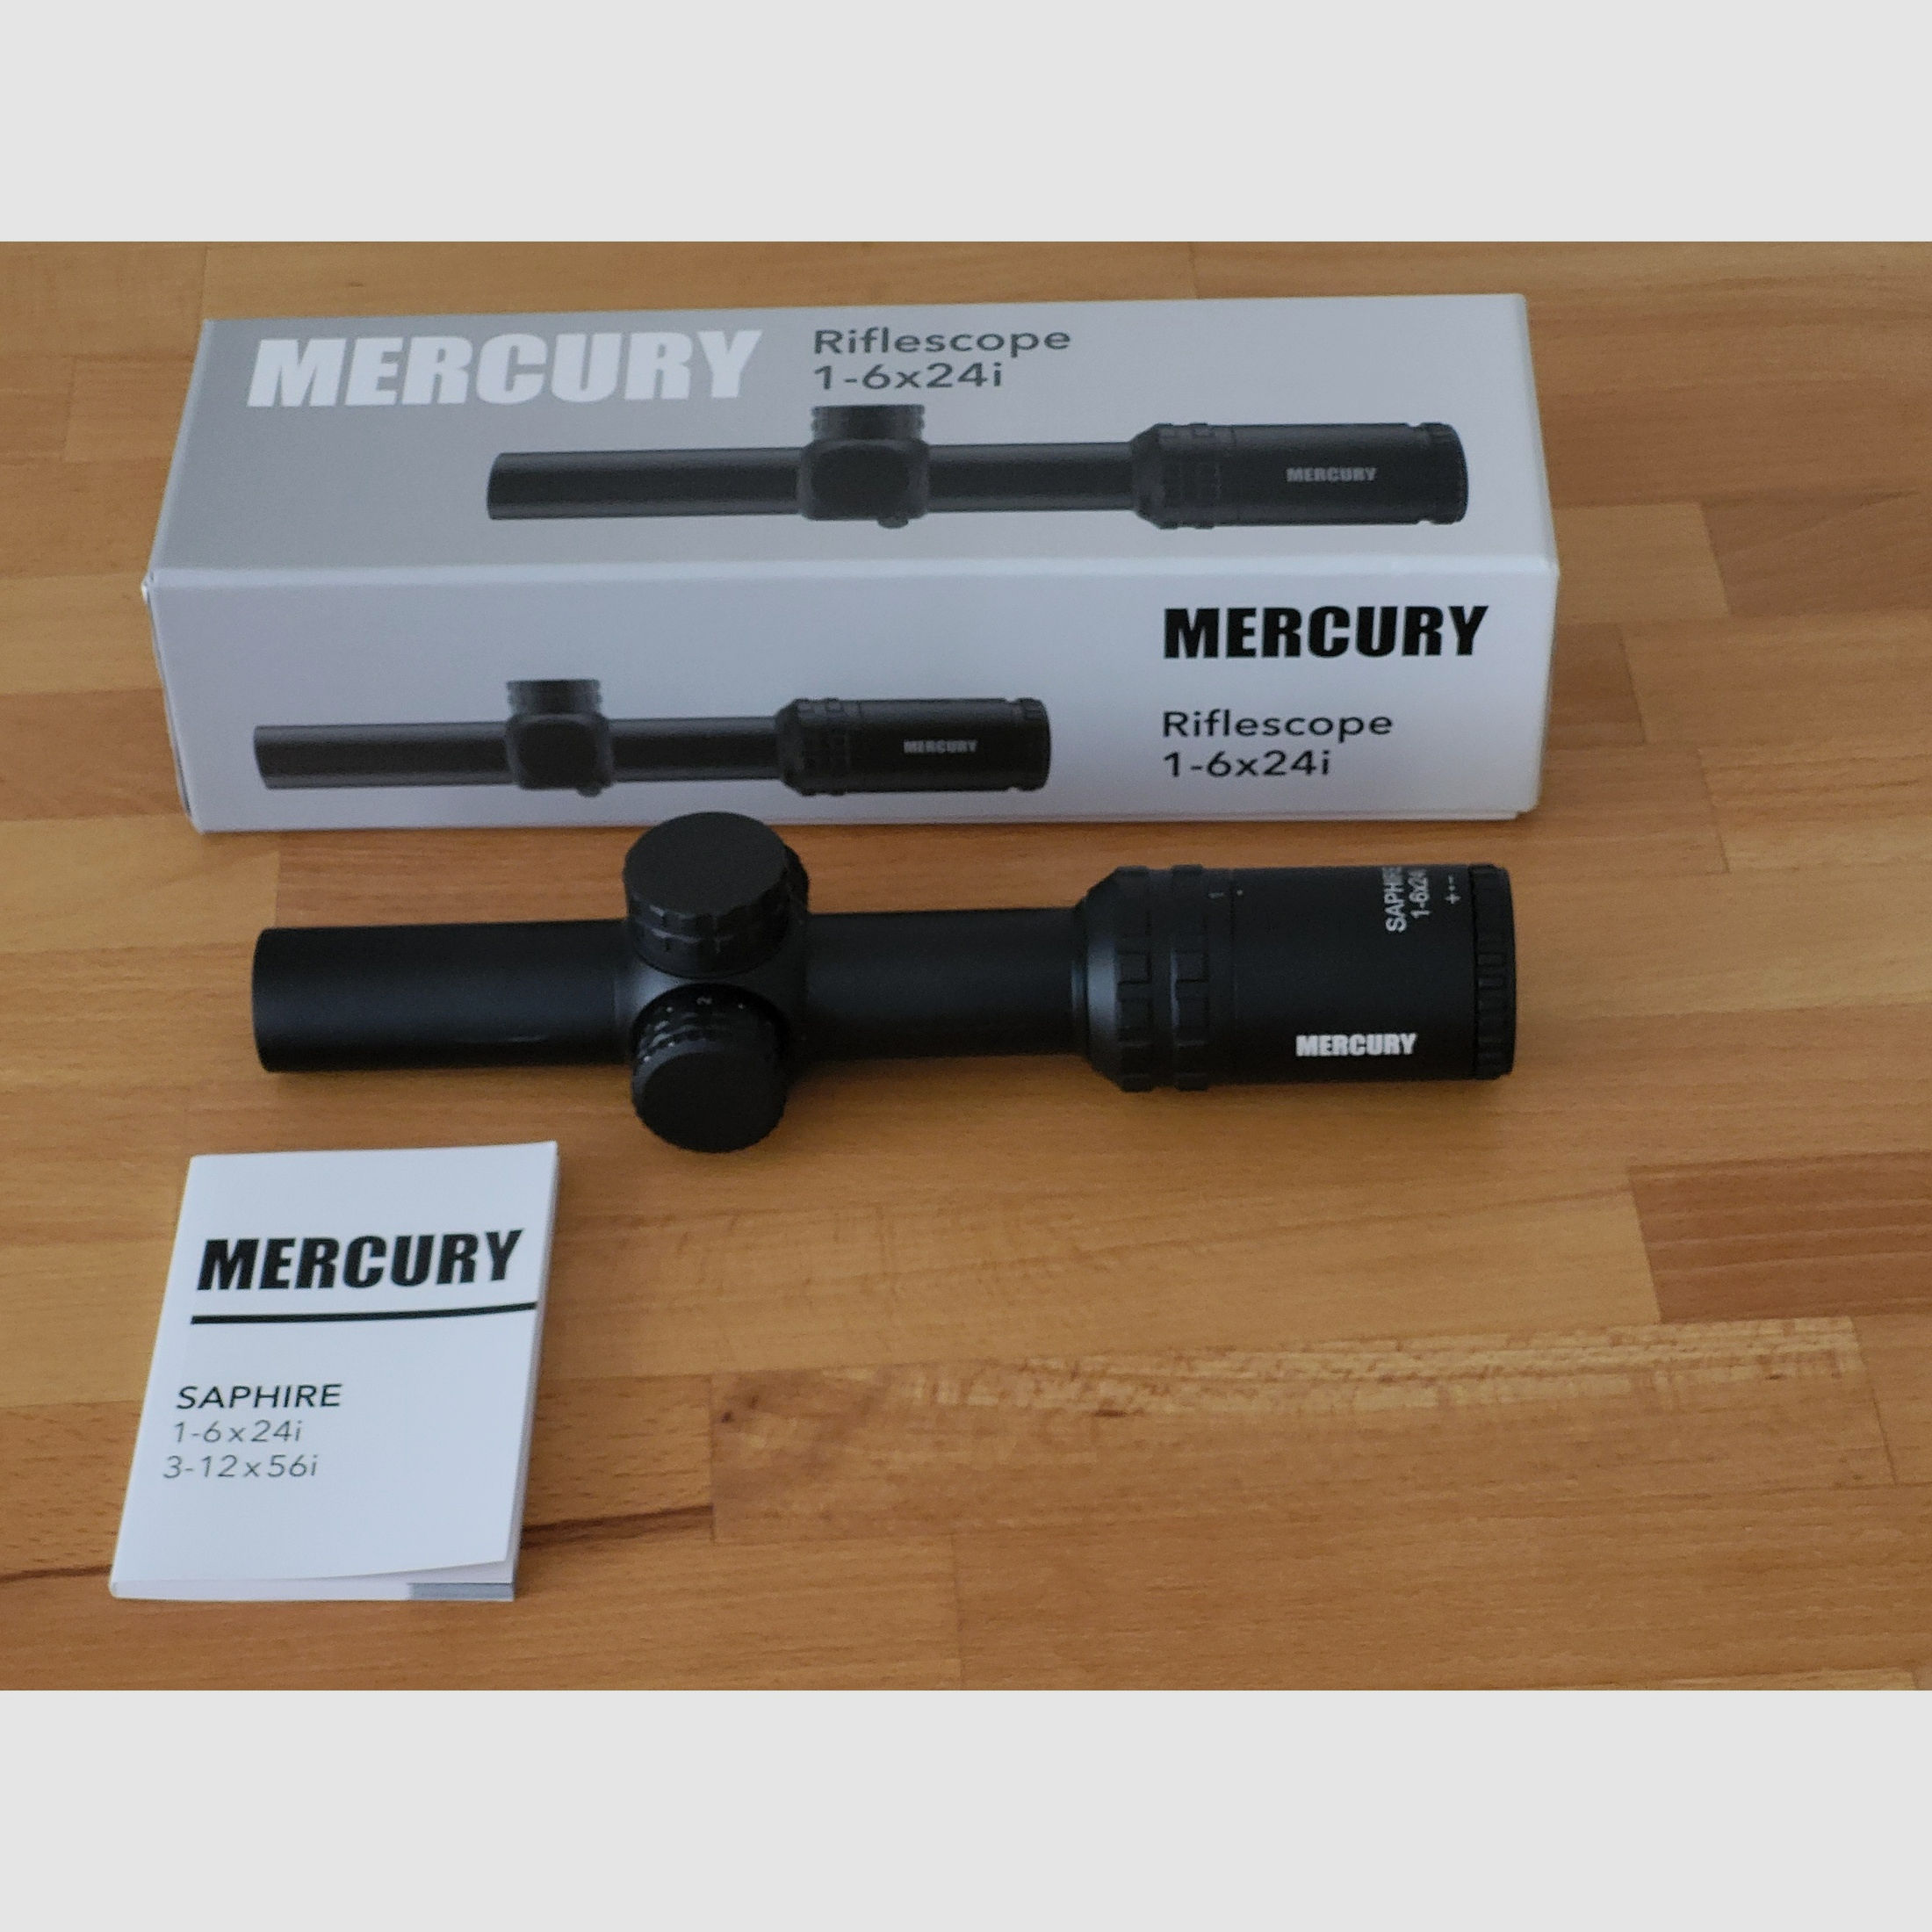 Zielfernrohr Mercury 1-6x24i